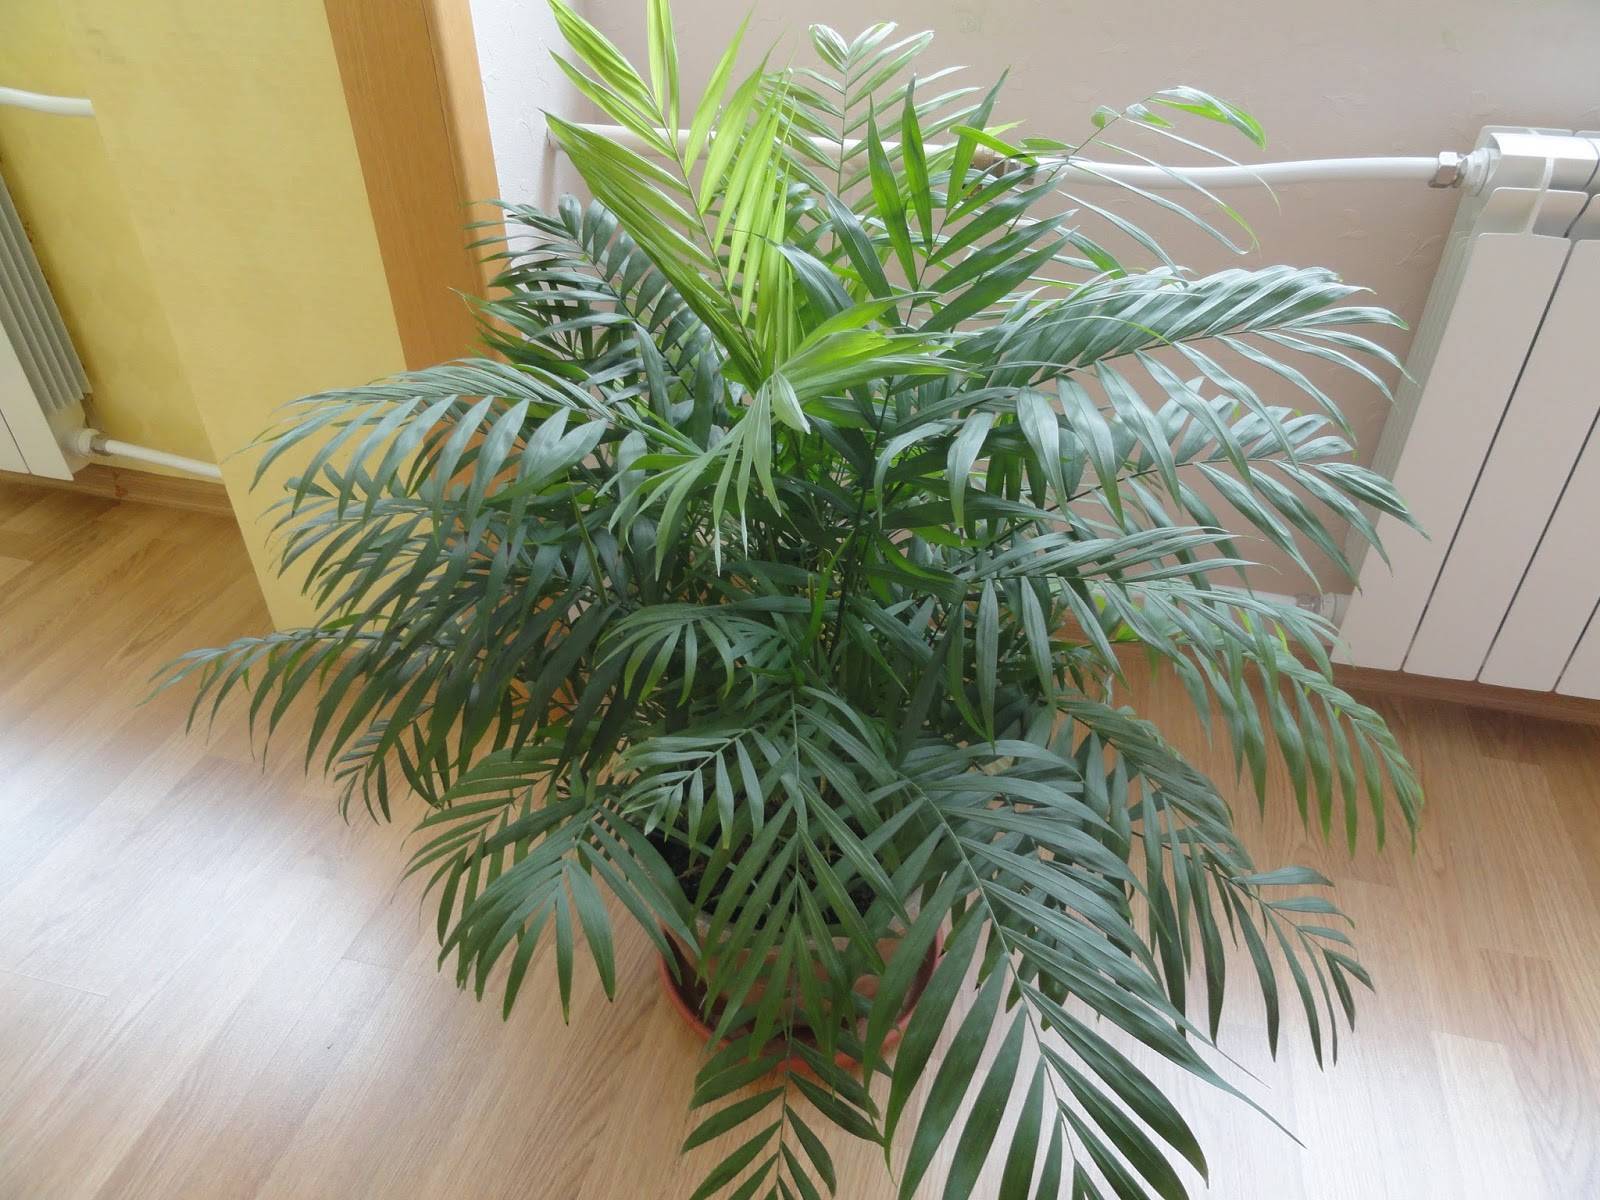 Хамедорея — лучшая пальма для размещения внутри комнат